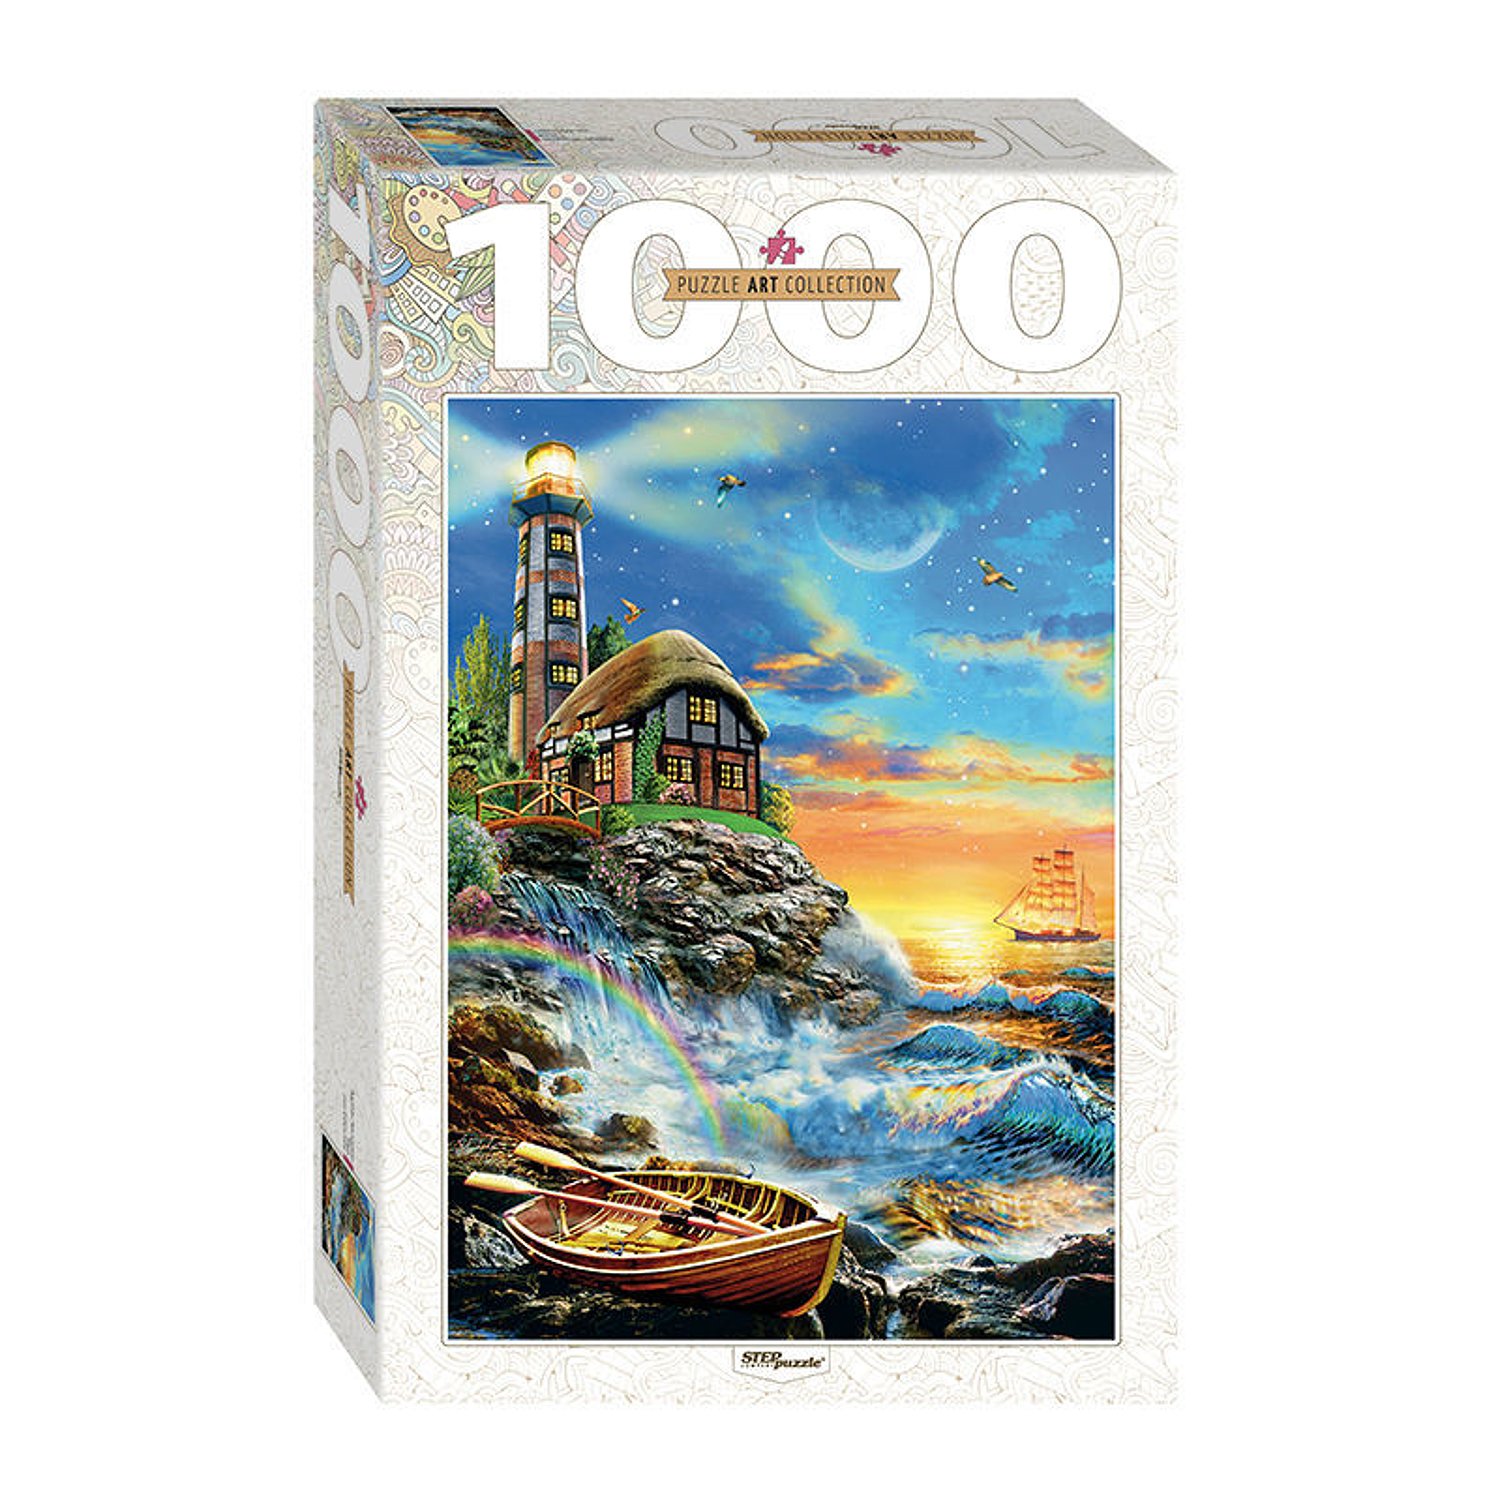 Пазл Step Puzzle Art Collection 1000 элементов в ассортименте 79109-79122